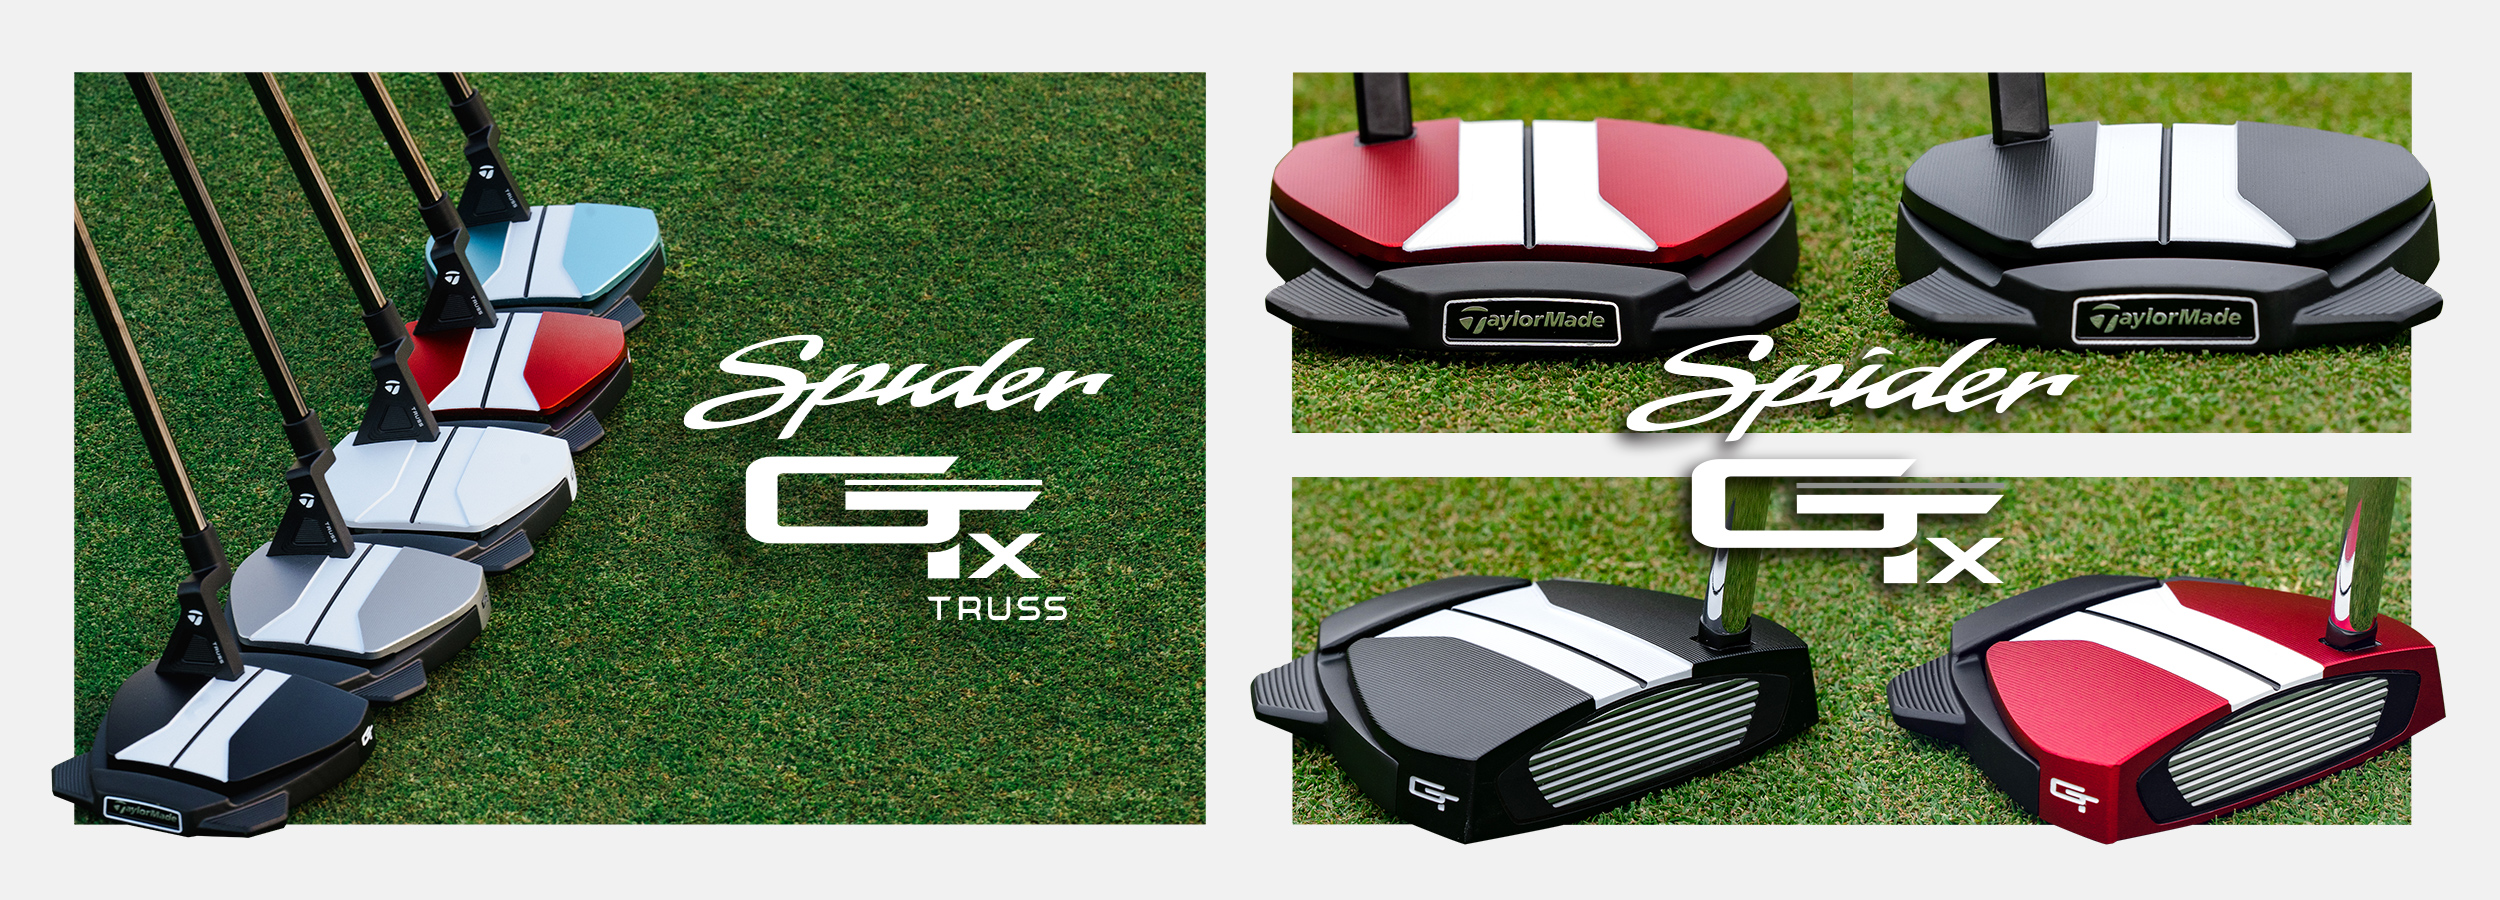 スパイダーGT X レッド トラスヒール パター | SPIDER GT X RED TRUSS | TaylorMade Golf | テーラーメイド  ゴルフ公式サイト